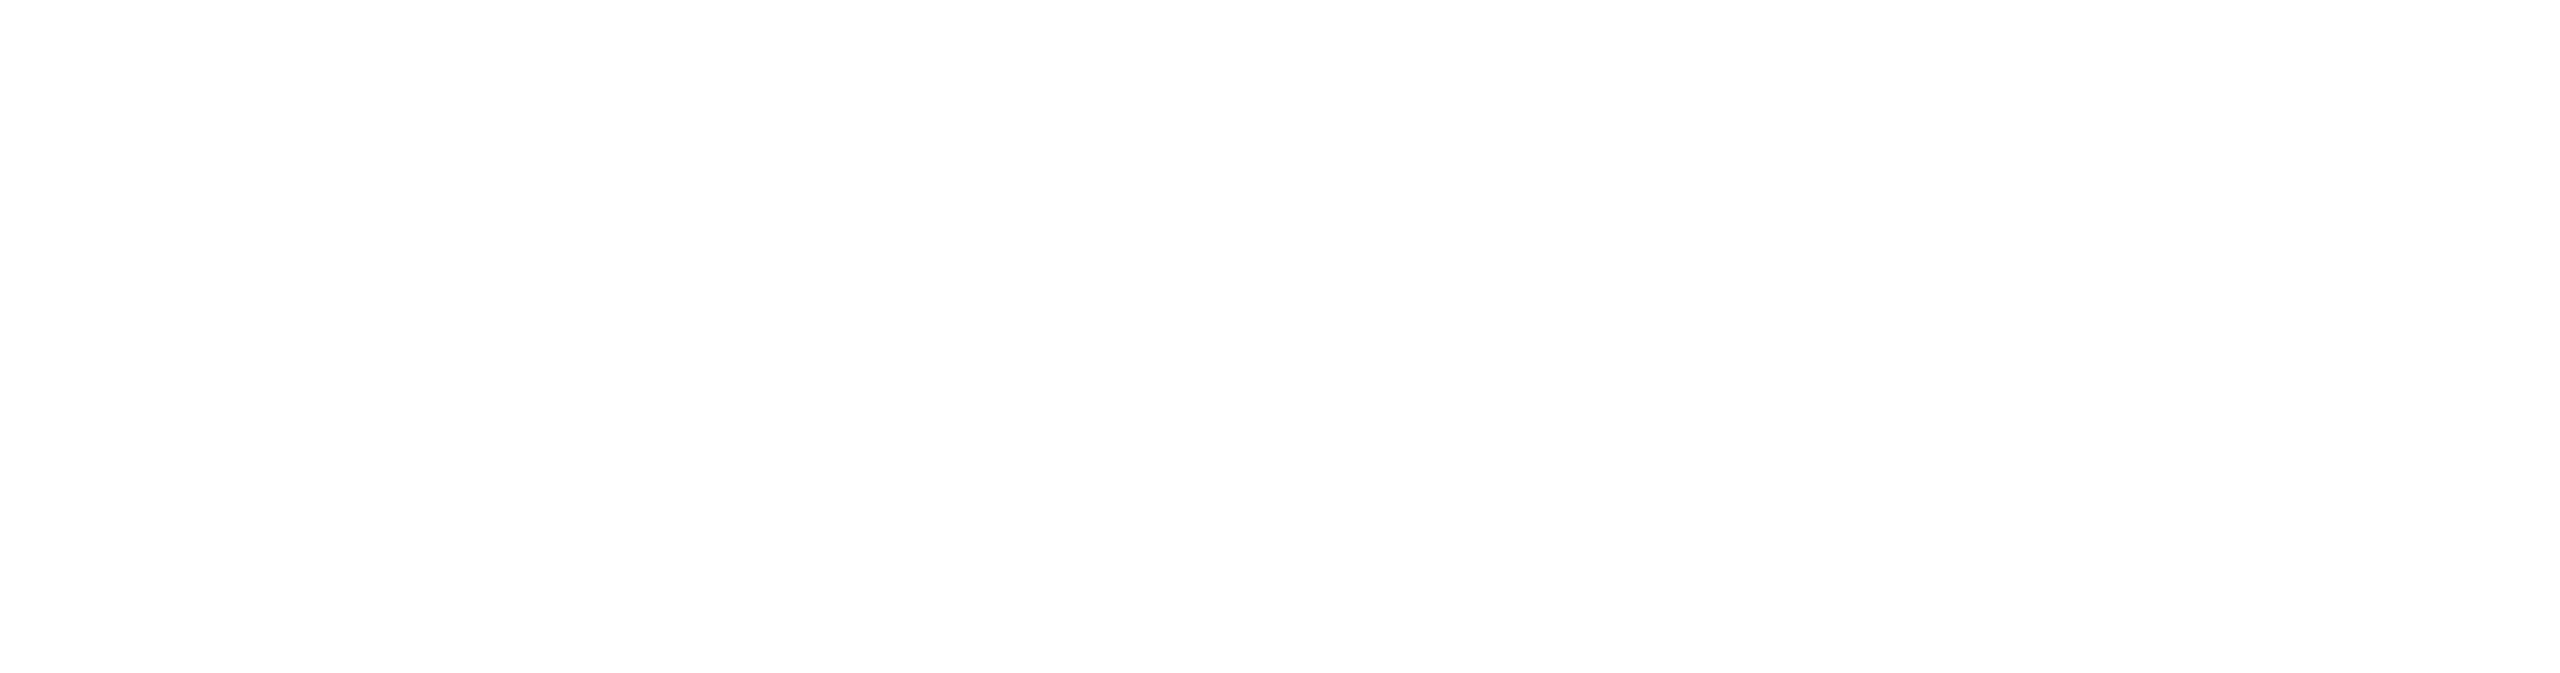 Logo MOLOTOW Web Development weiß